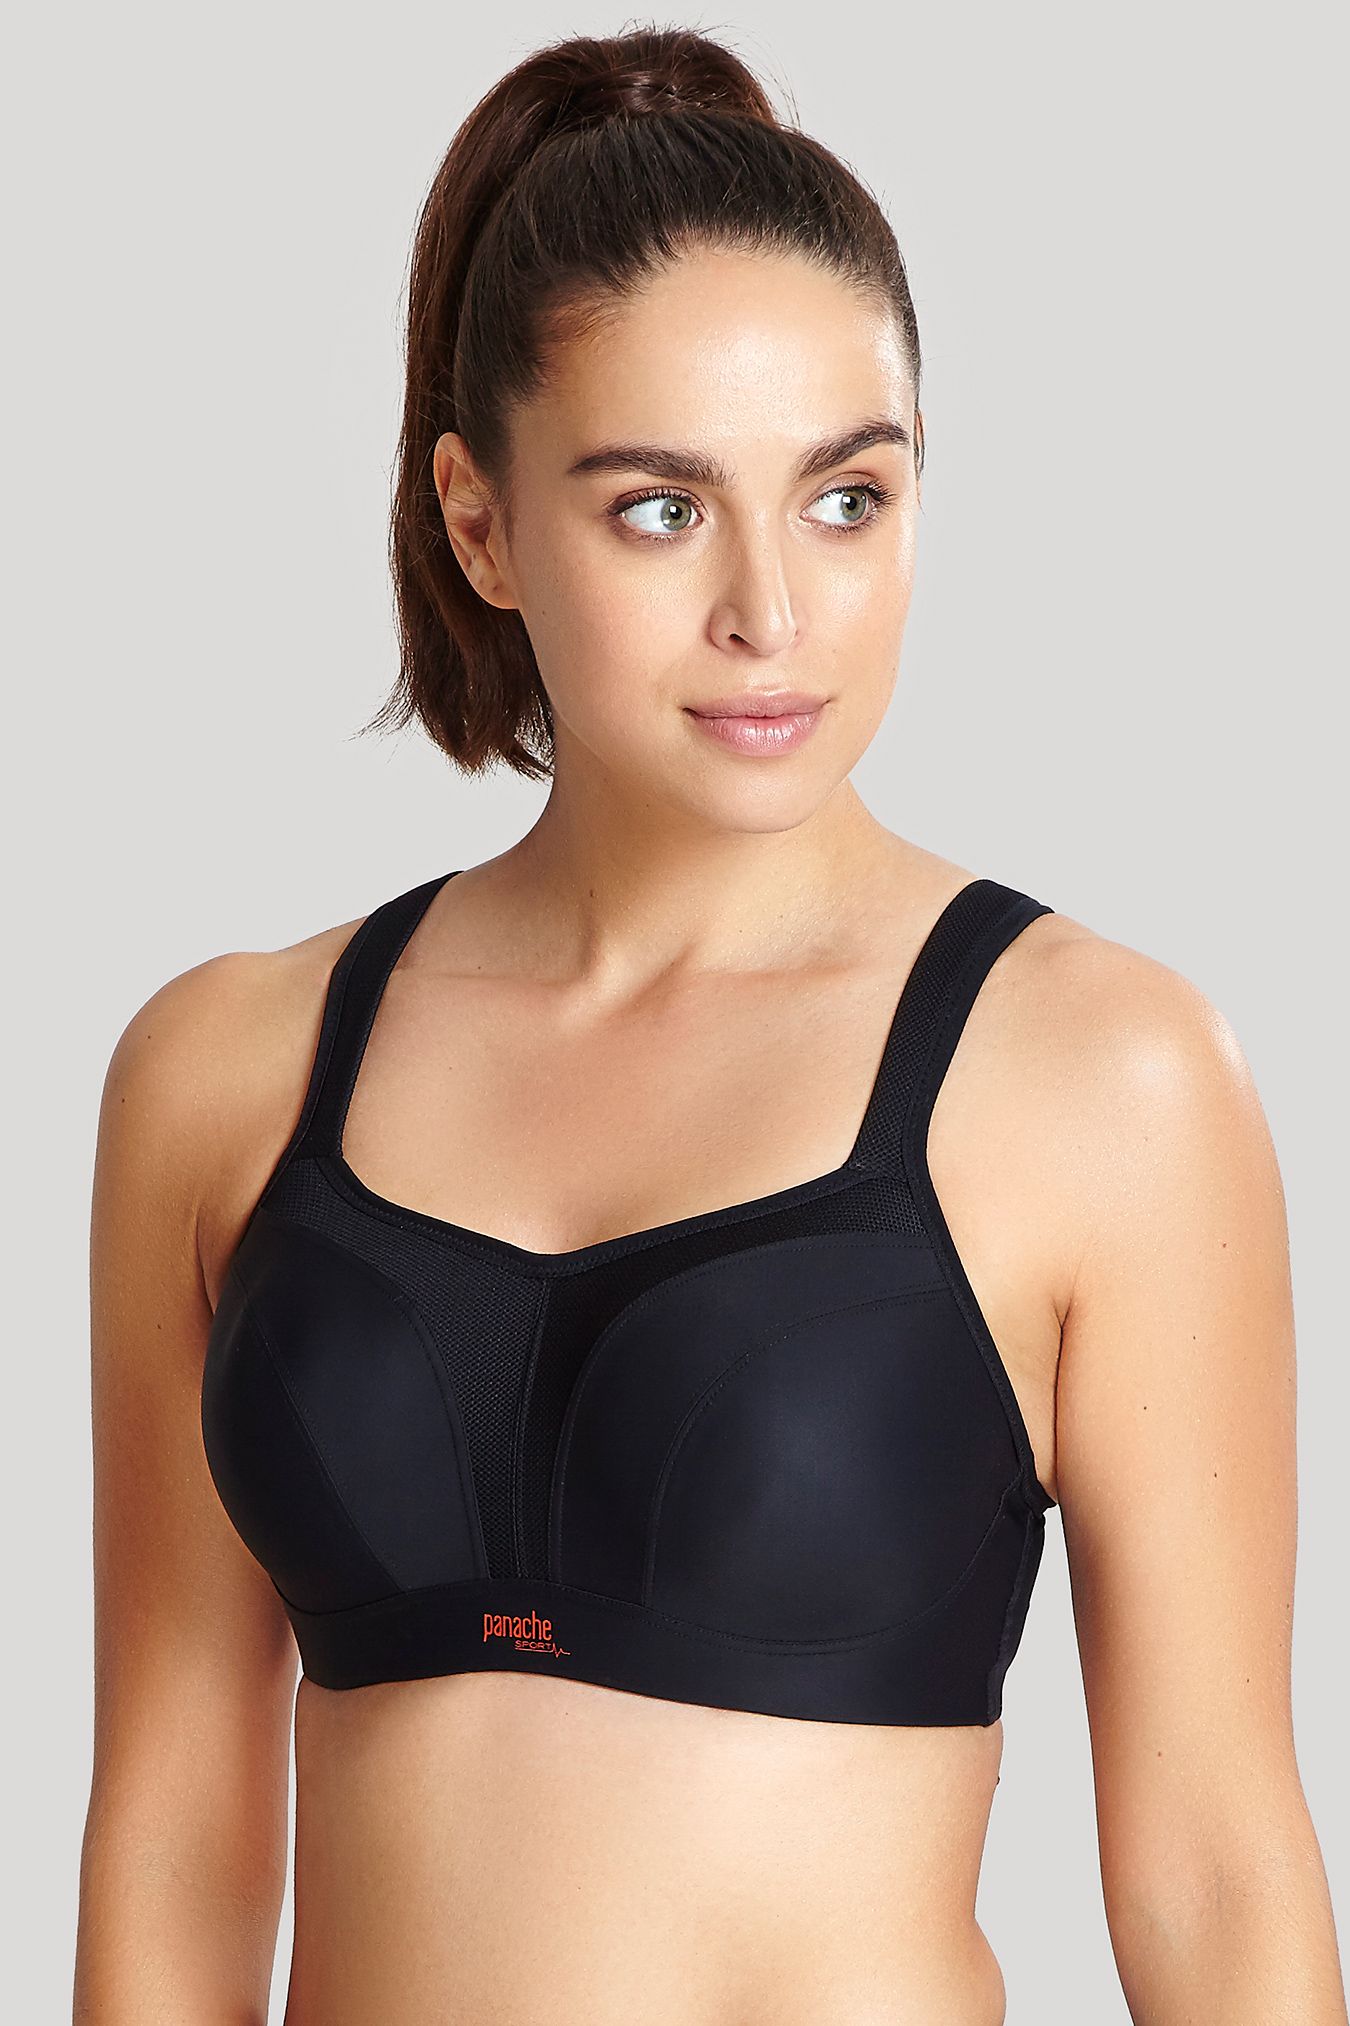 discount 53% Navy Blue M Adidas Sport bra WOMEN FASHION Underwear & Nightwear Sport bra 